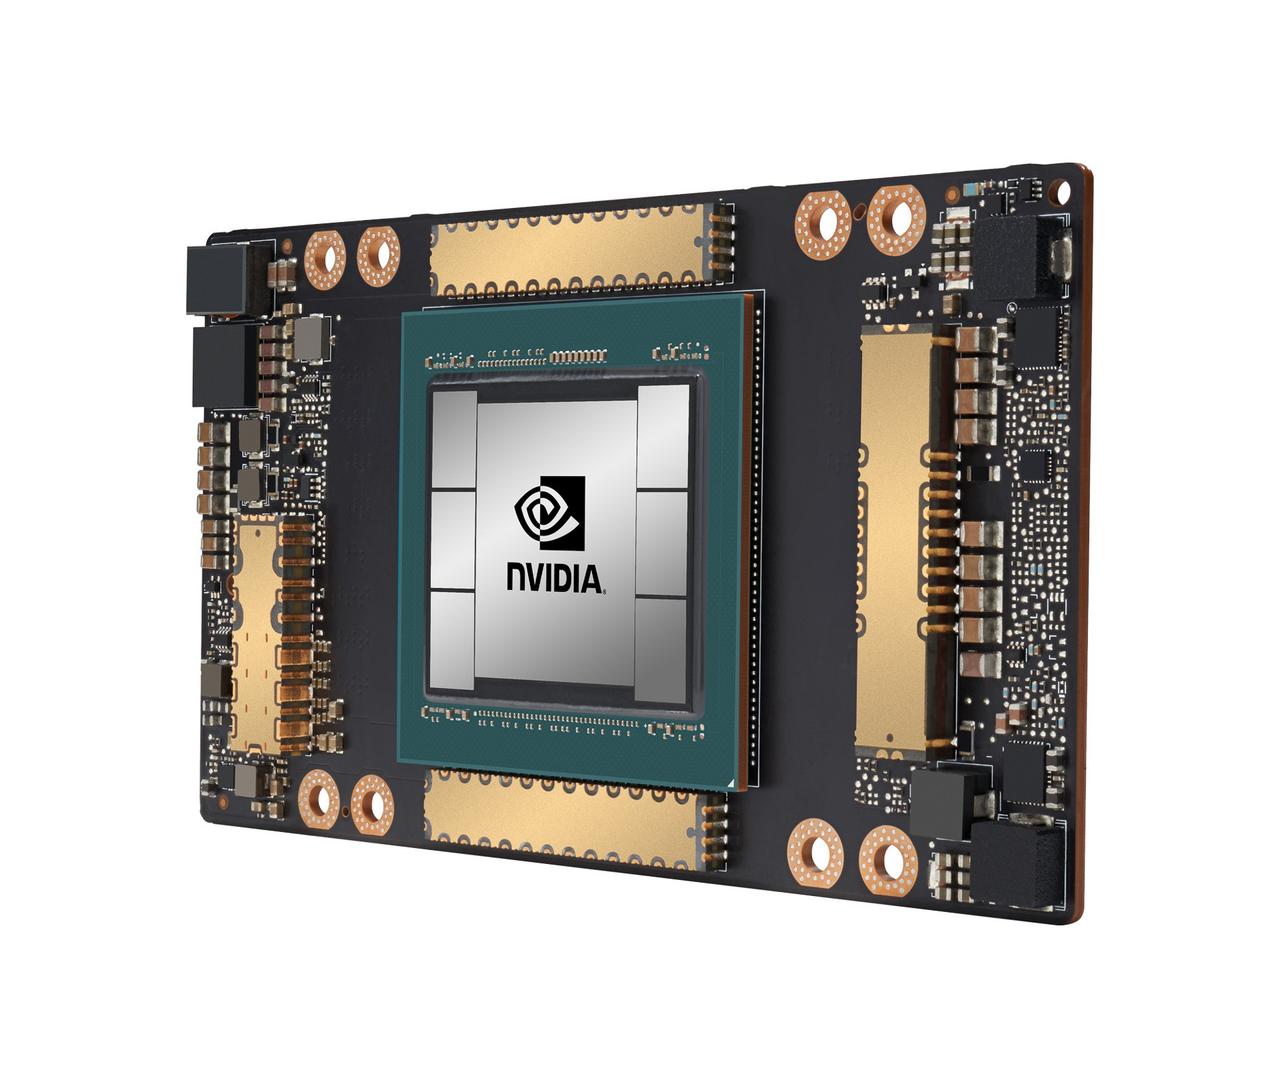 NVIDIAが発表したコードネームAmpreこと｢NVIDIA A100｣GPU